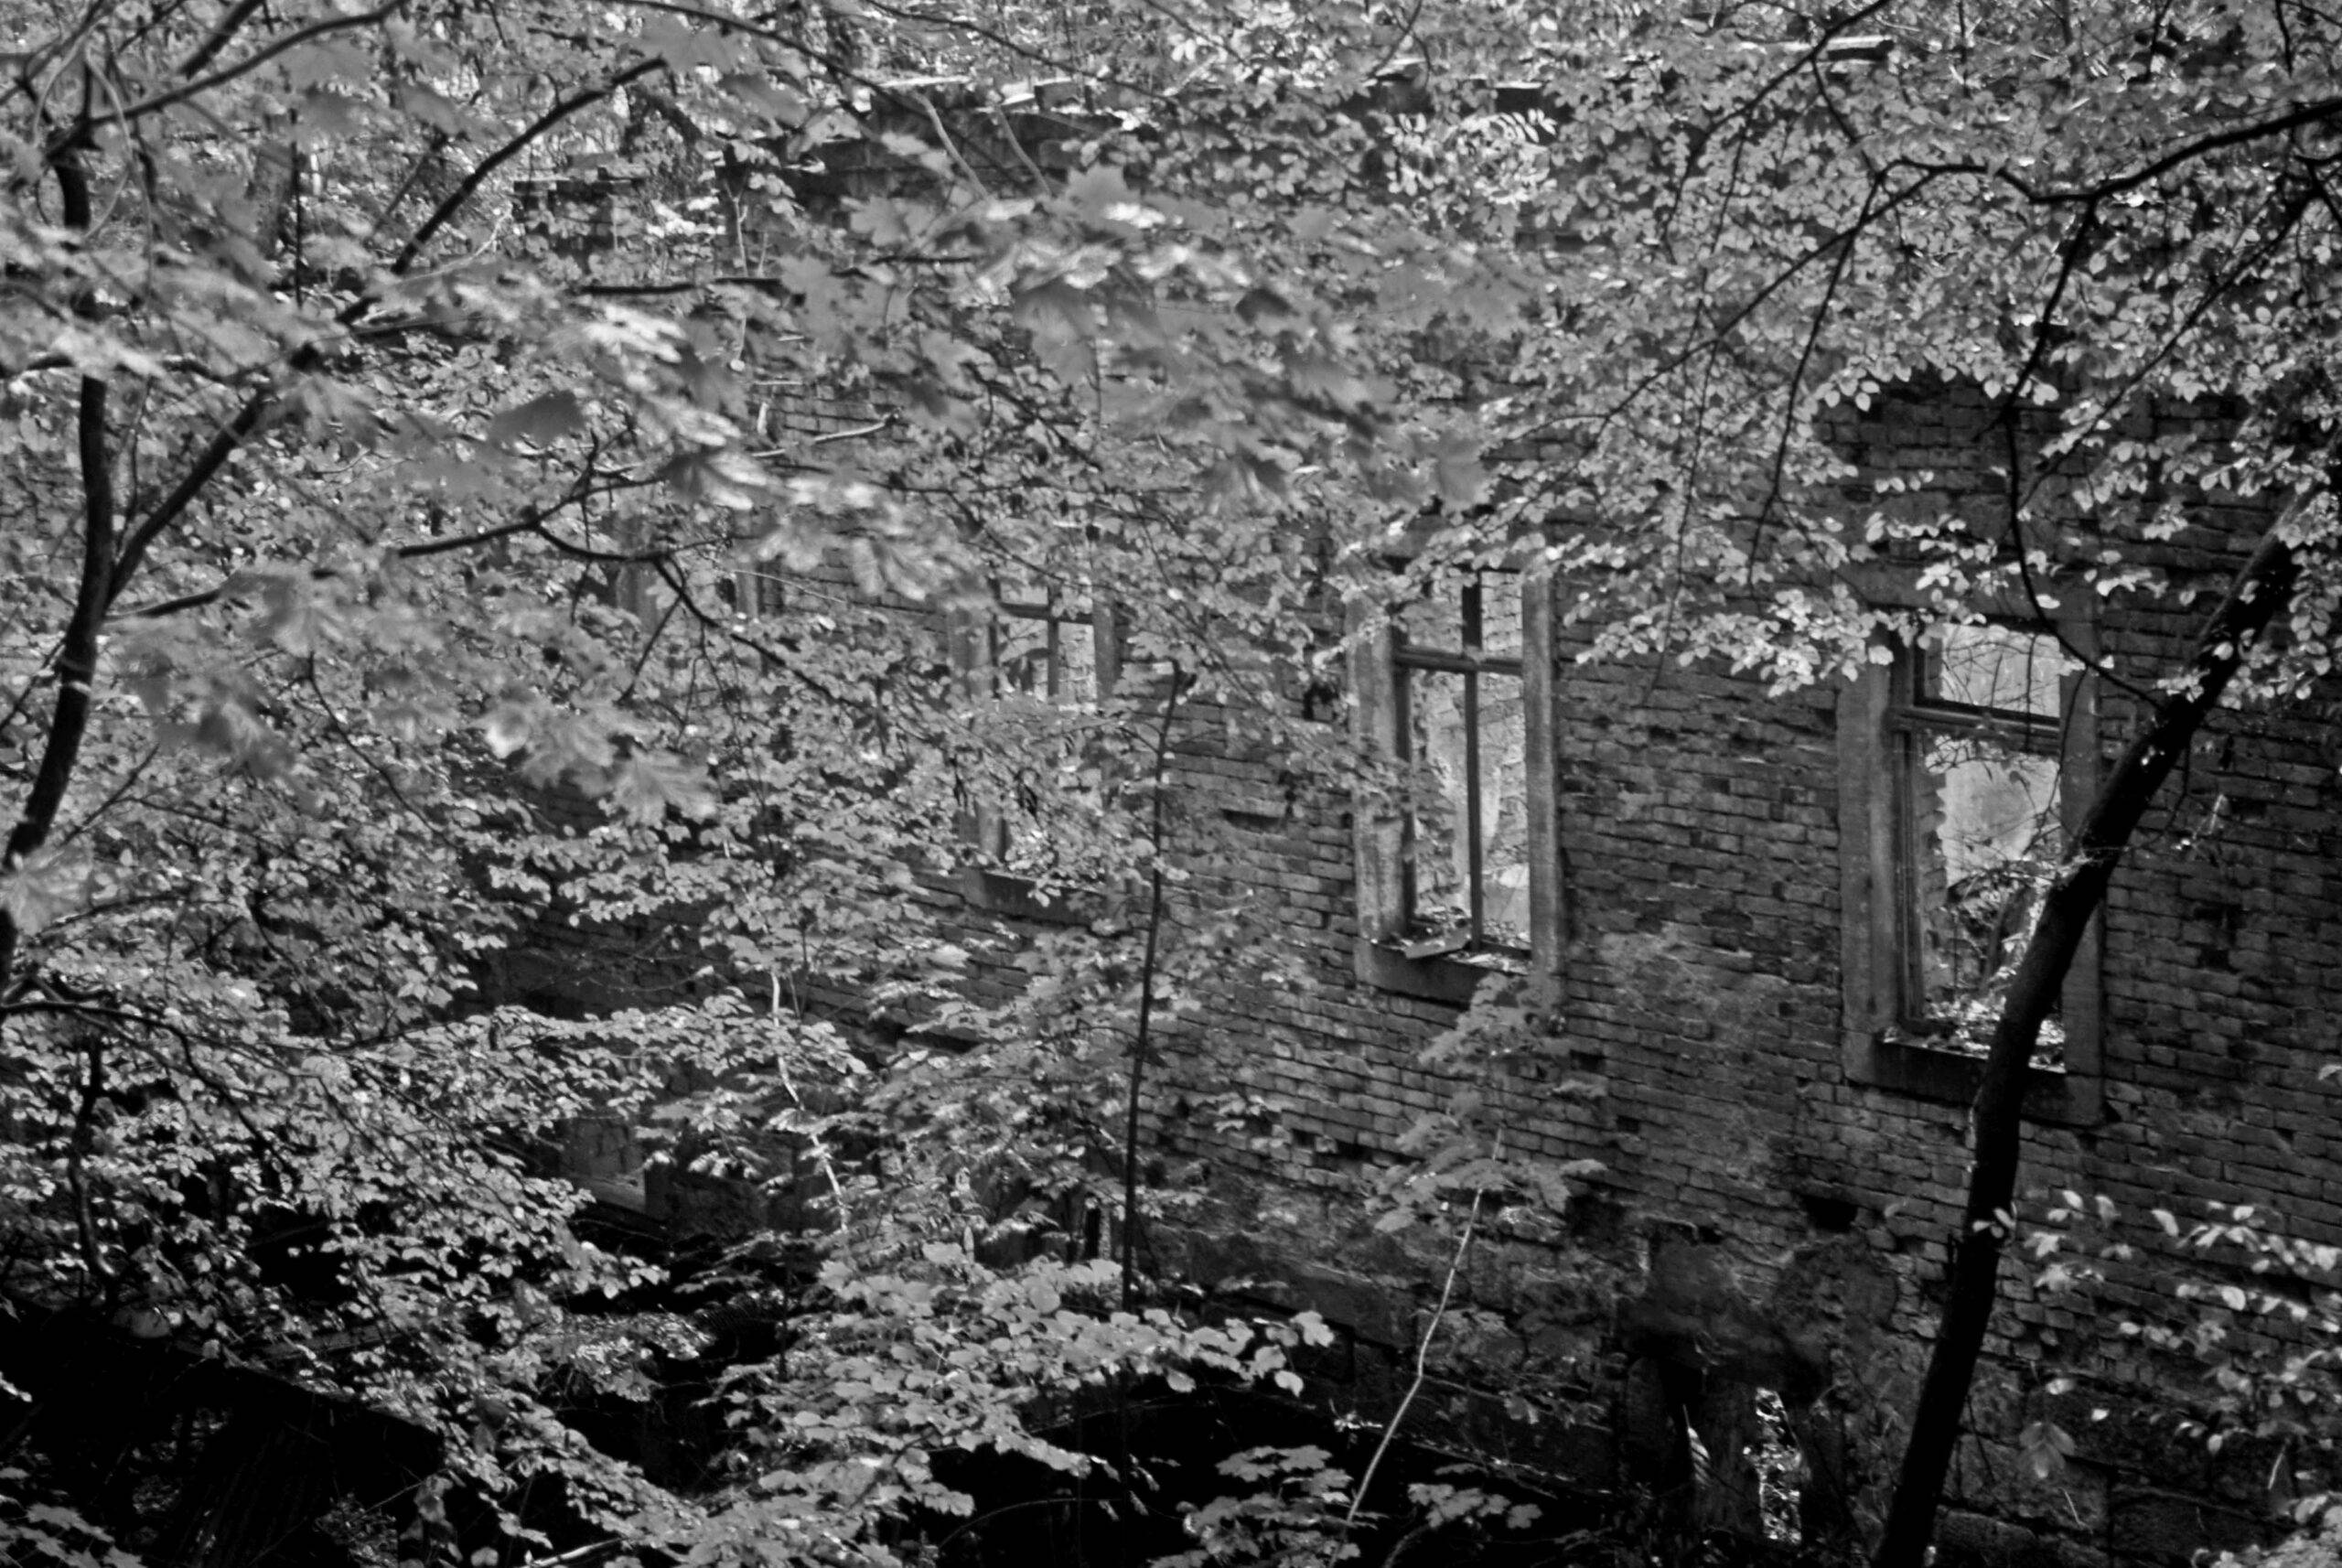 Wie unser Vanlife begann. Eine Ruine mit Bäumen davor, symbolisiert, dass aus Altem Neues entstehen kann. Das Bild wurde bewuß in schwarz-weiß gehalten.